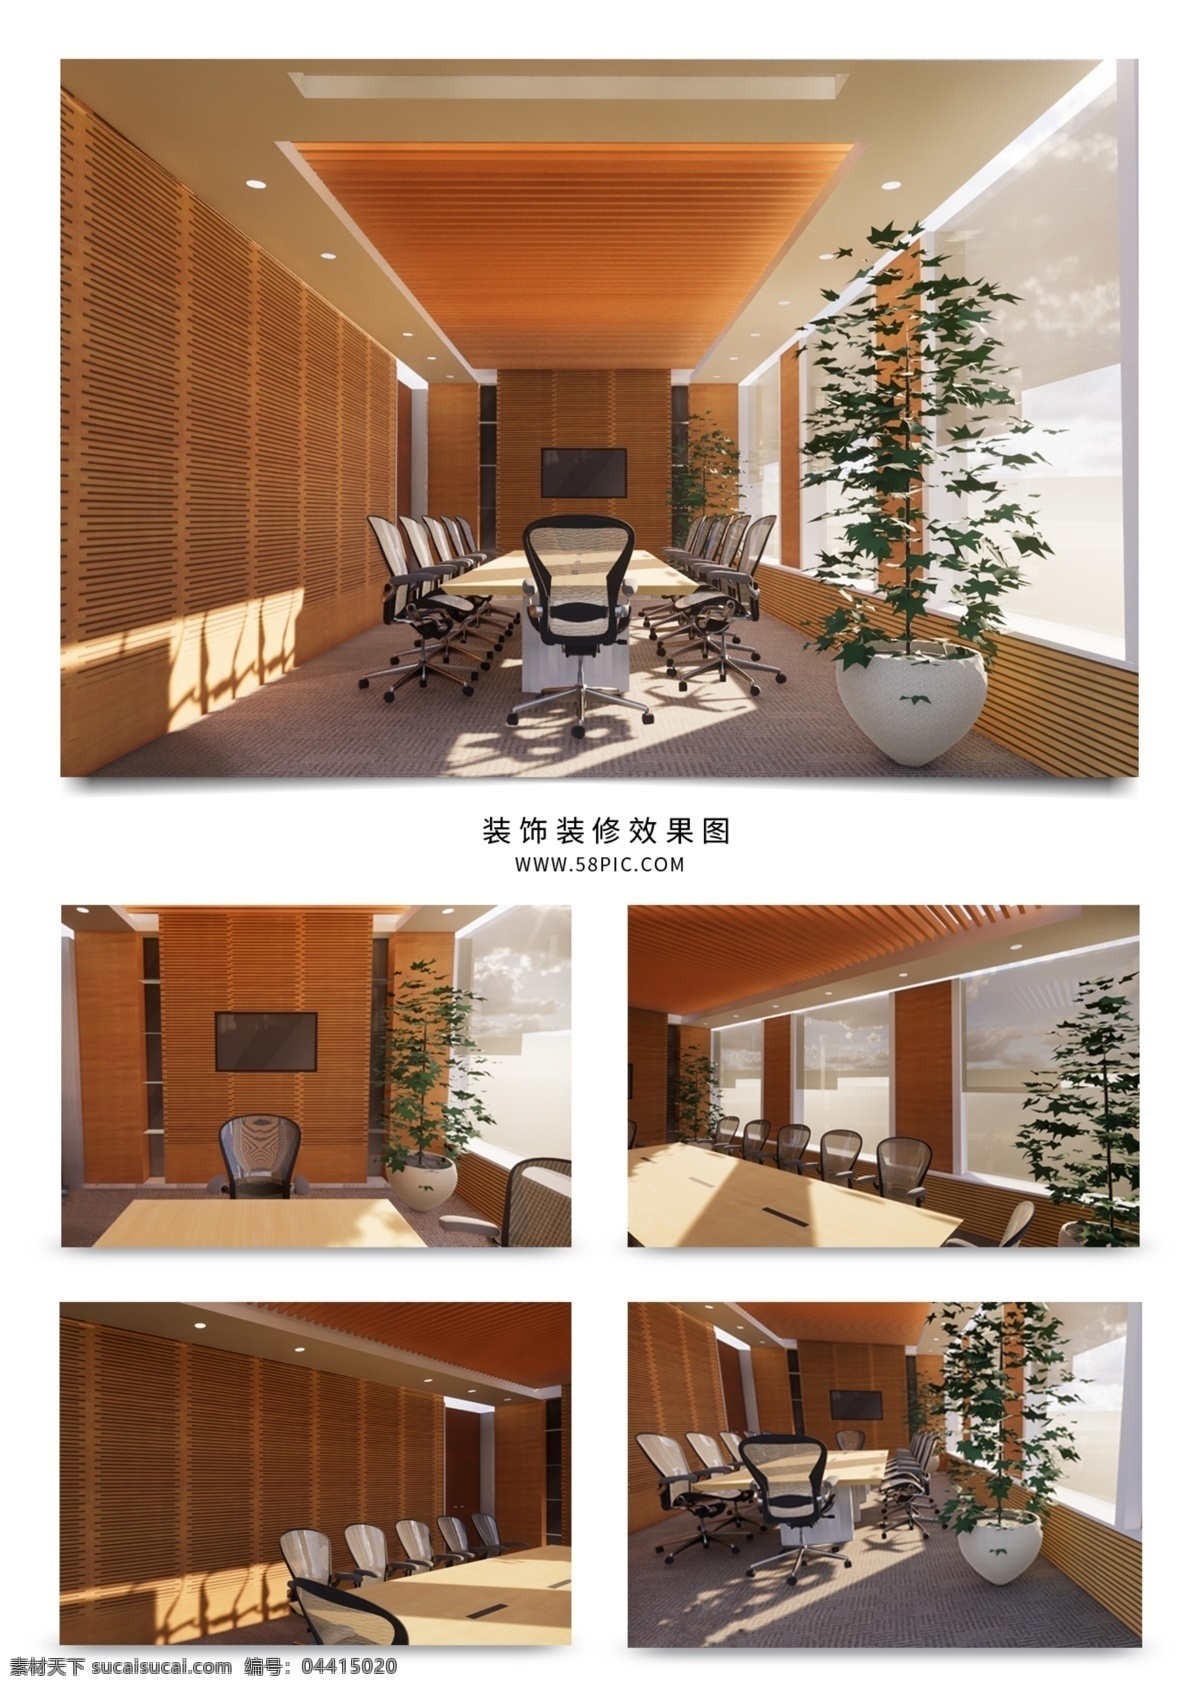 精装 公司 会议室 效果图 工装 材质 光影 木材 桌椅